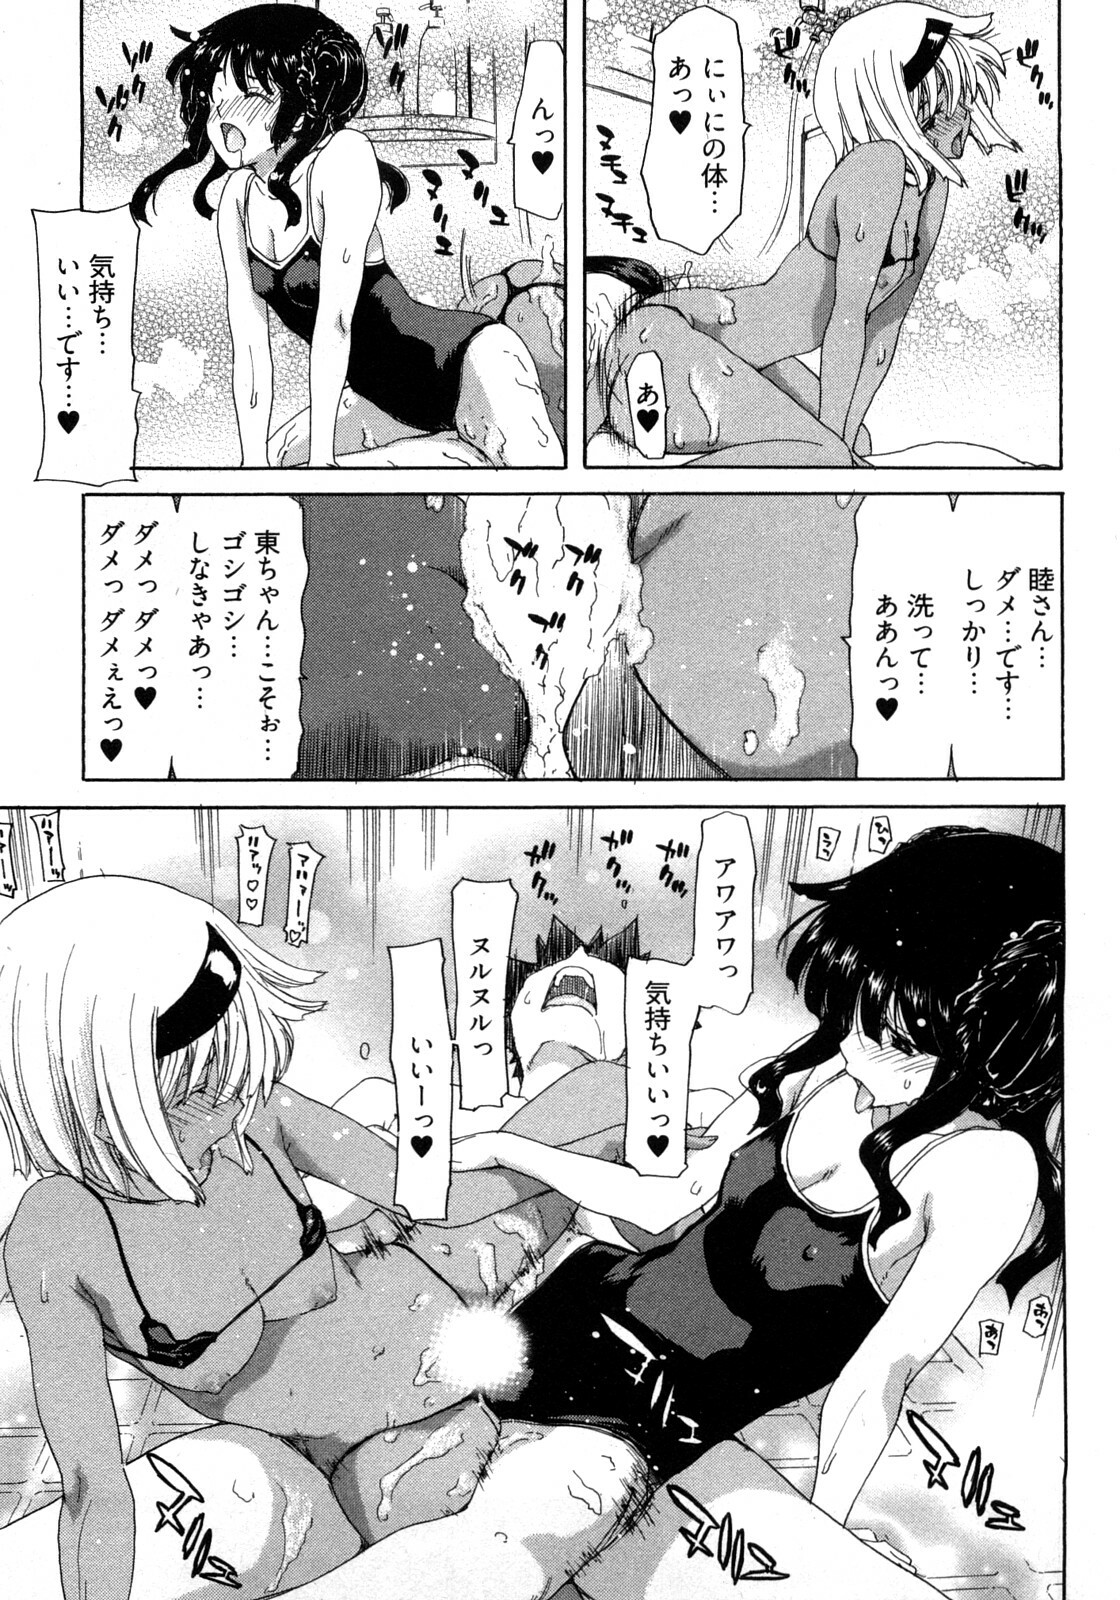 [Hori Hiroaki] My Darling page 38 full